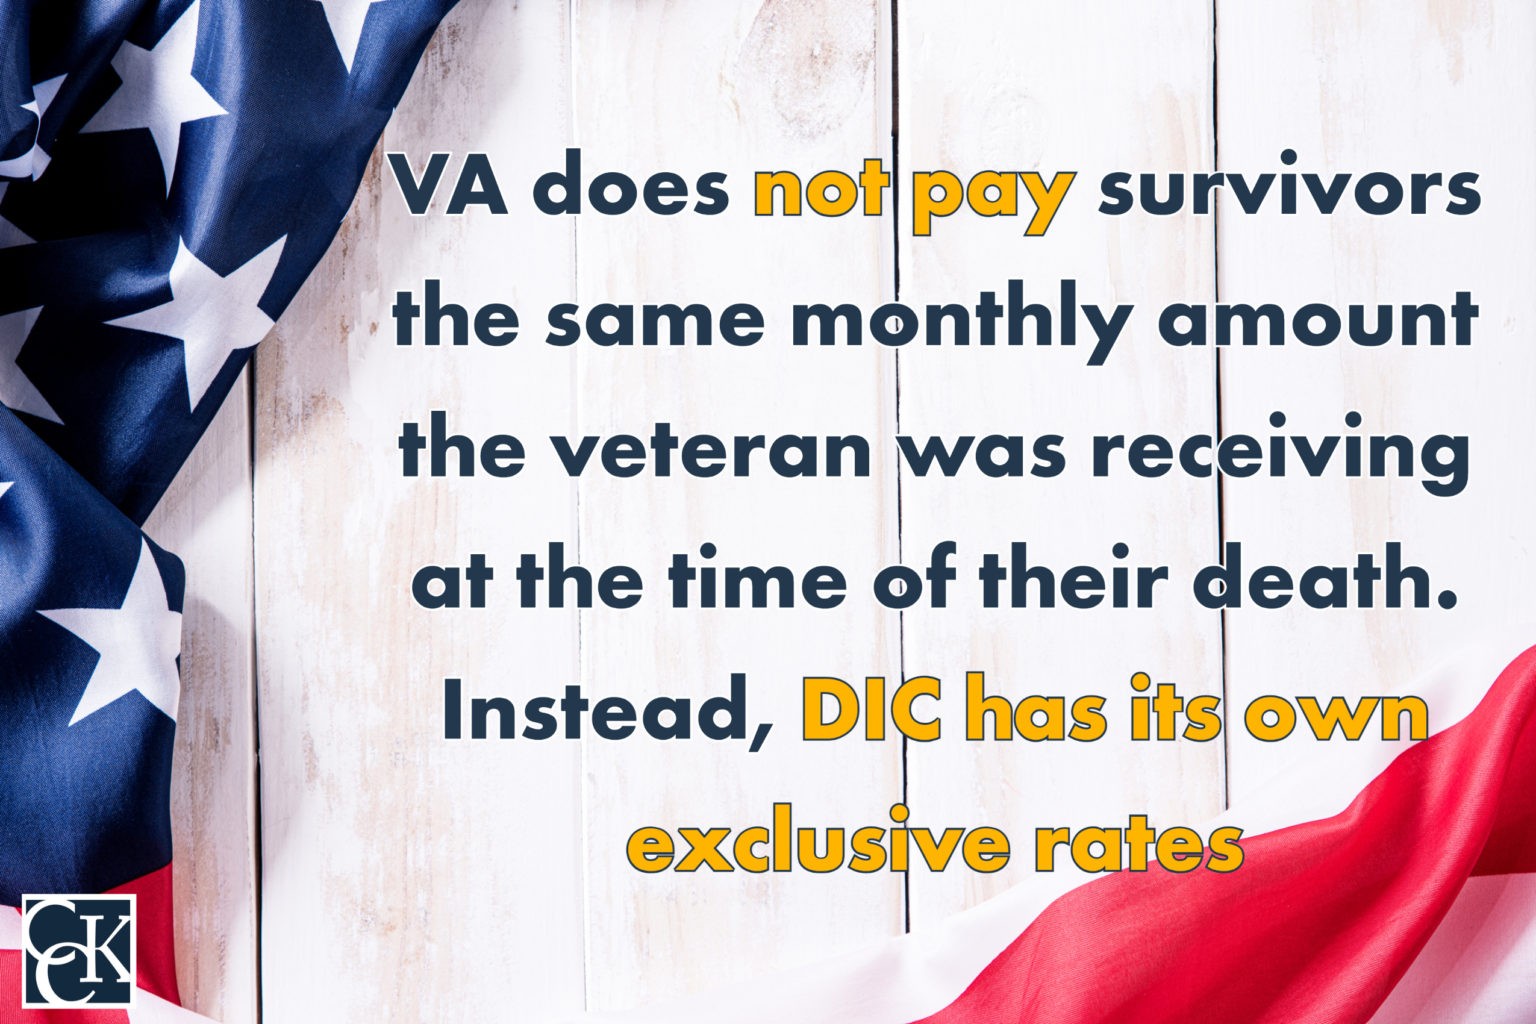 VA Survivors Benefits VA Benefits for Deceased Veterans' Dependents